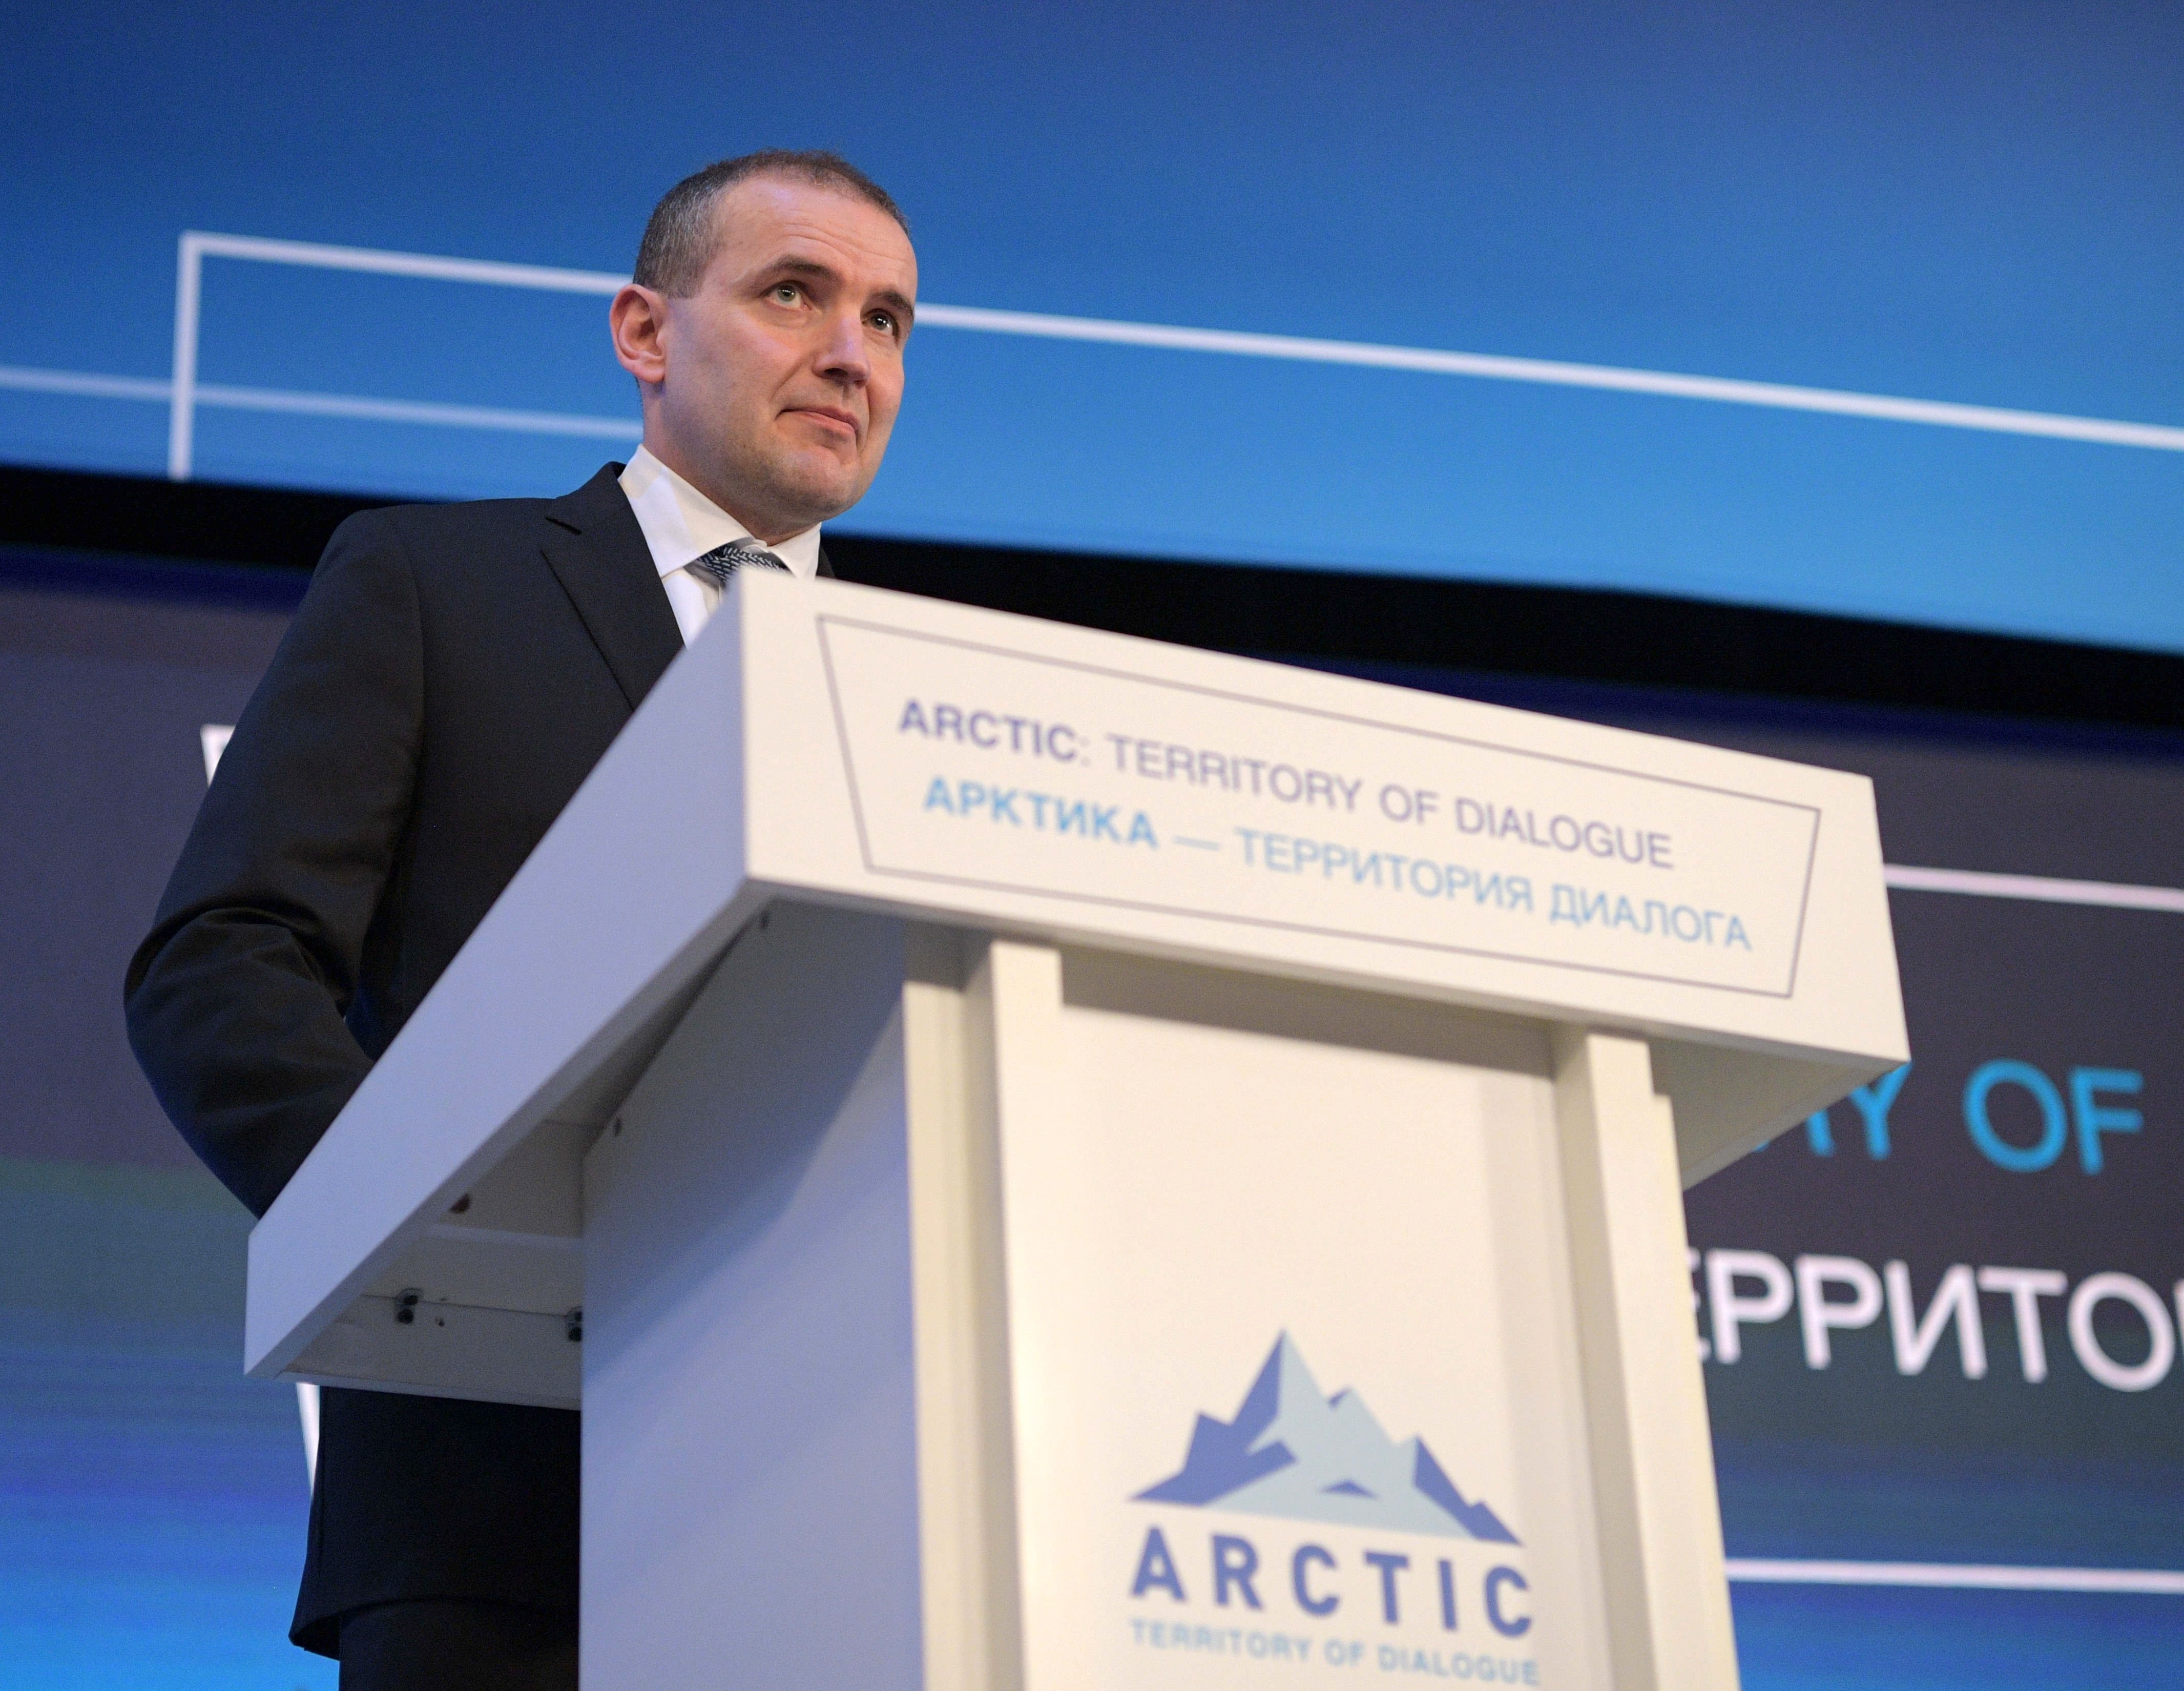 Гвюдни Йоханнессон выступает на Арктическом форуме. Фото: © РИА Новости / Алексей Дружинин